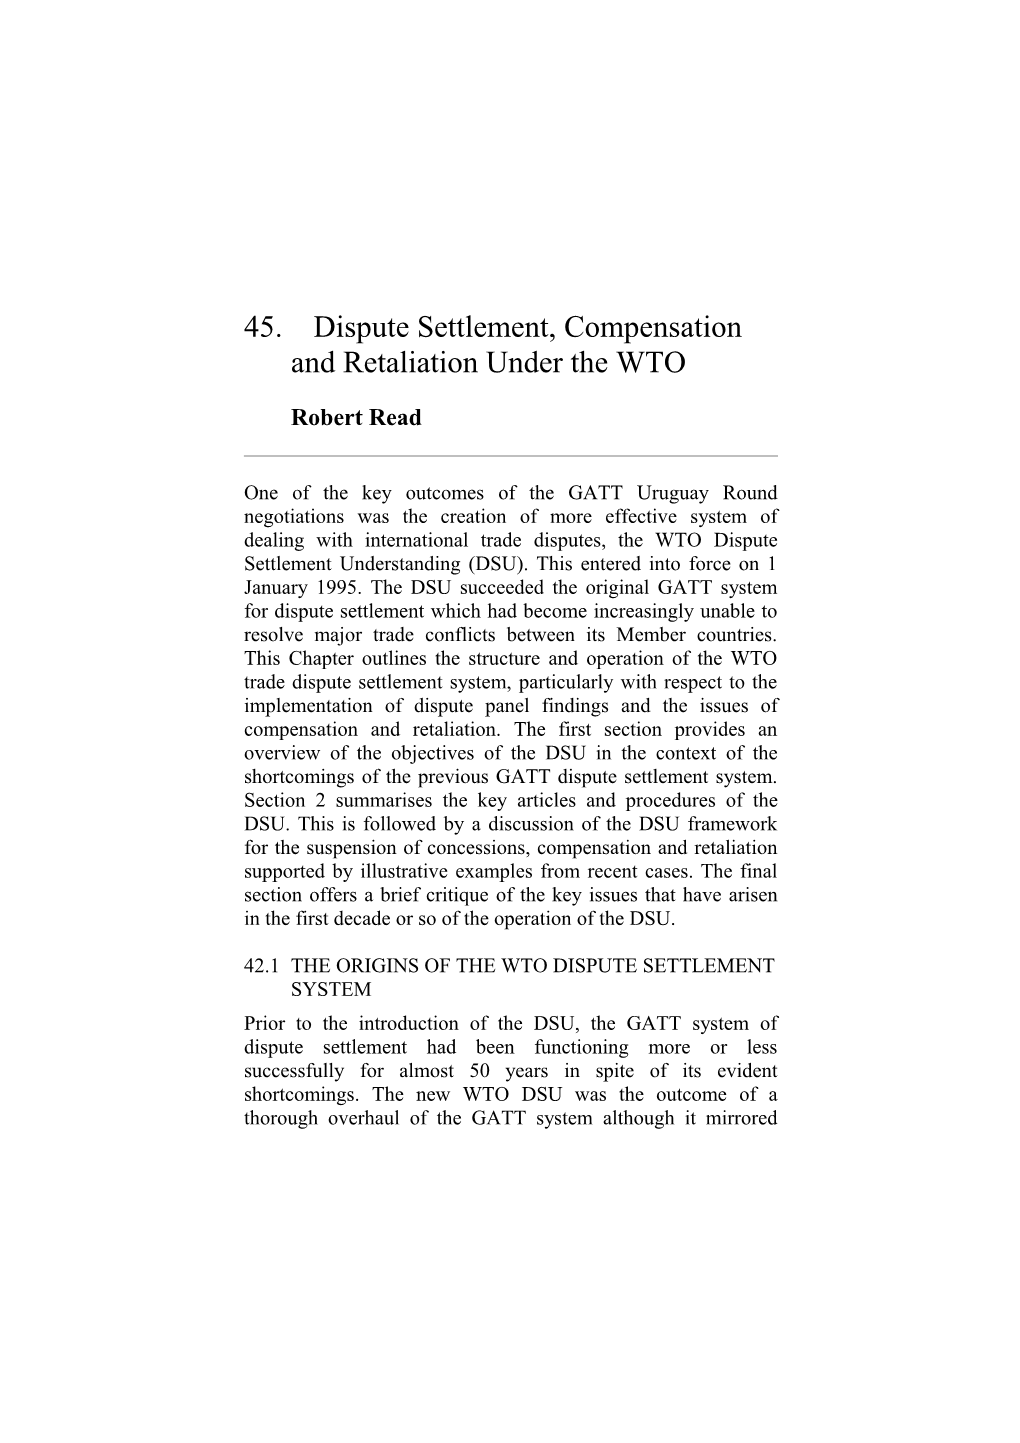 WTO Dispute Settlement, Compensation & Retaliation